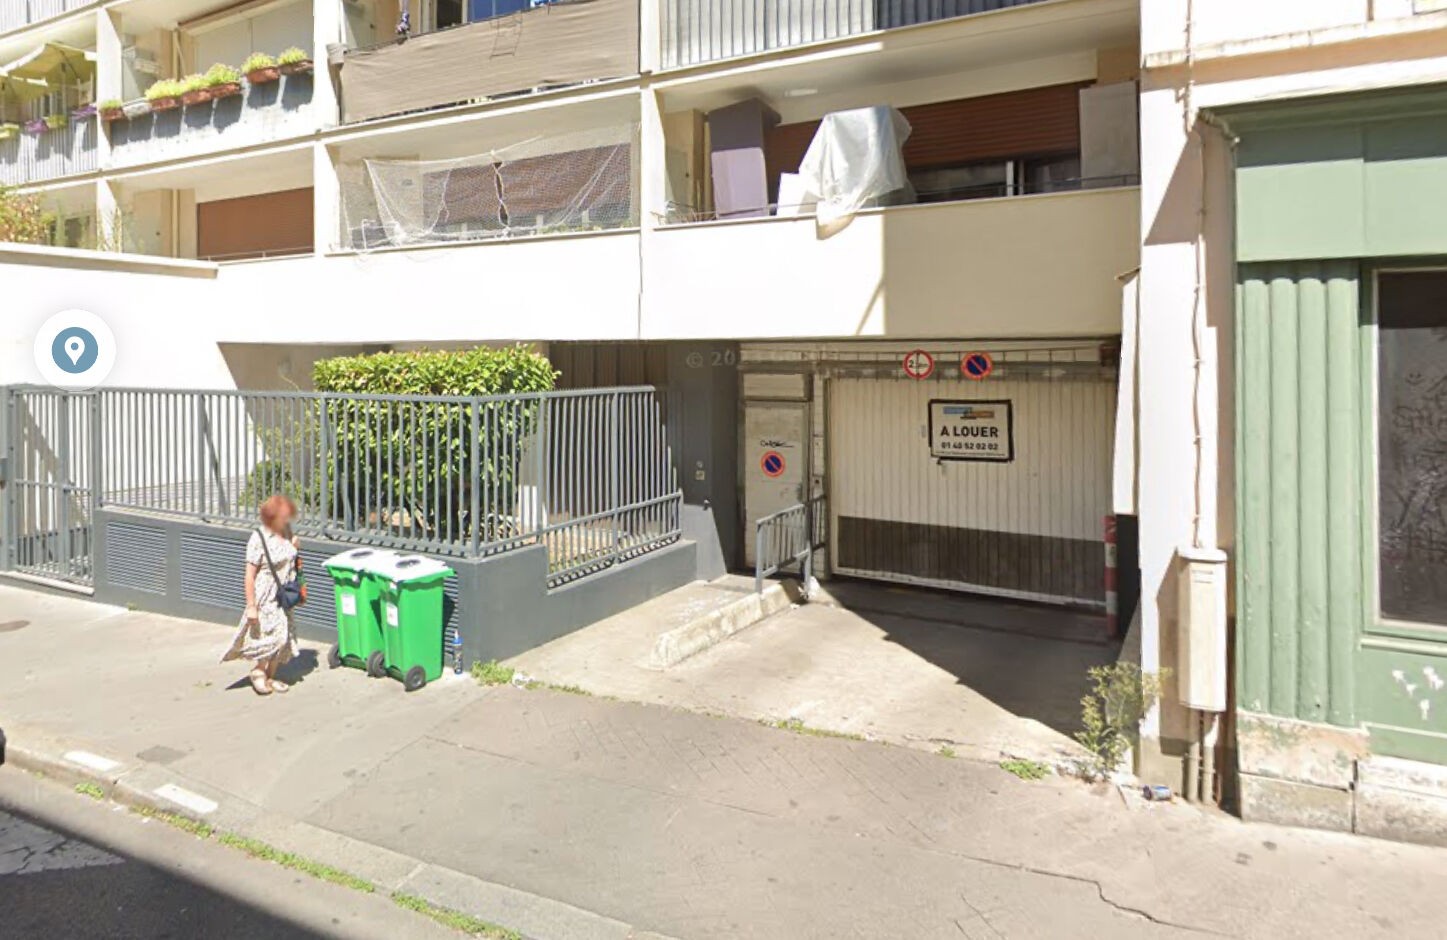 Location Garage / Parking à Paris Buttes-Chaumont 19e arrondissement 0 pièce